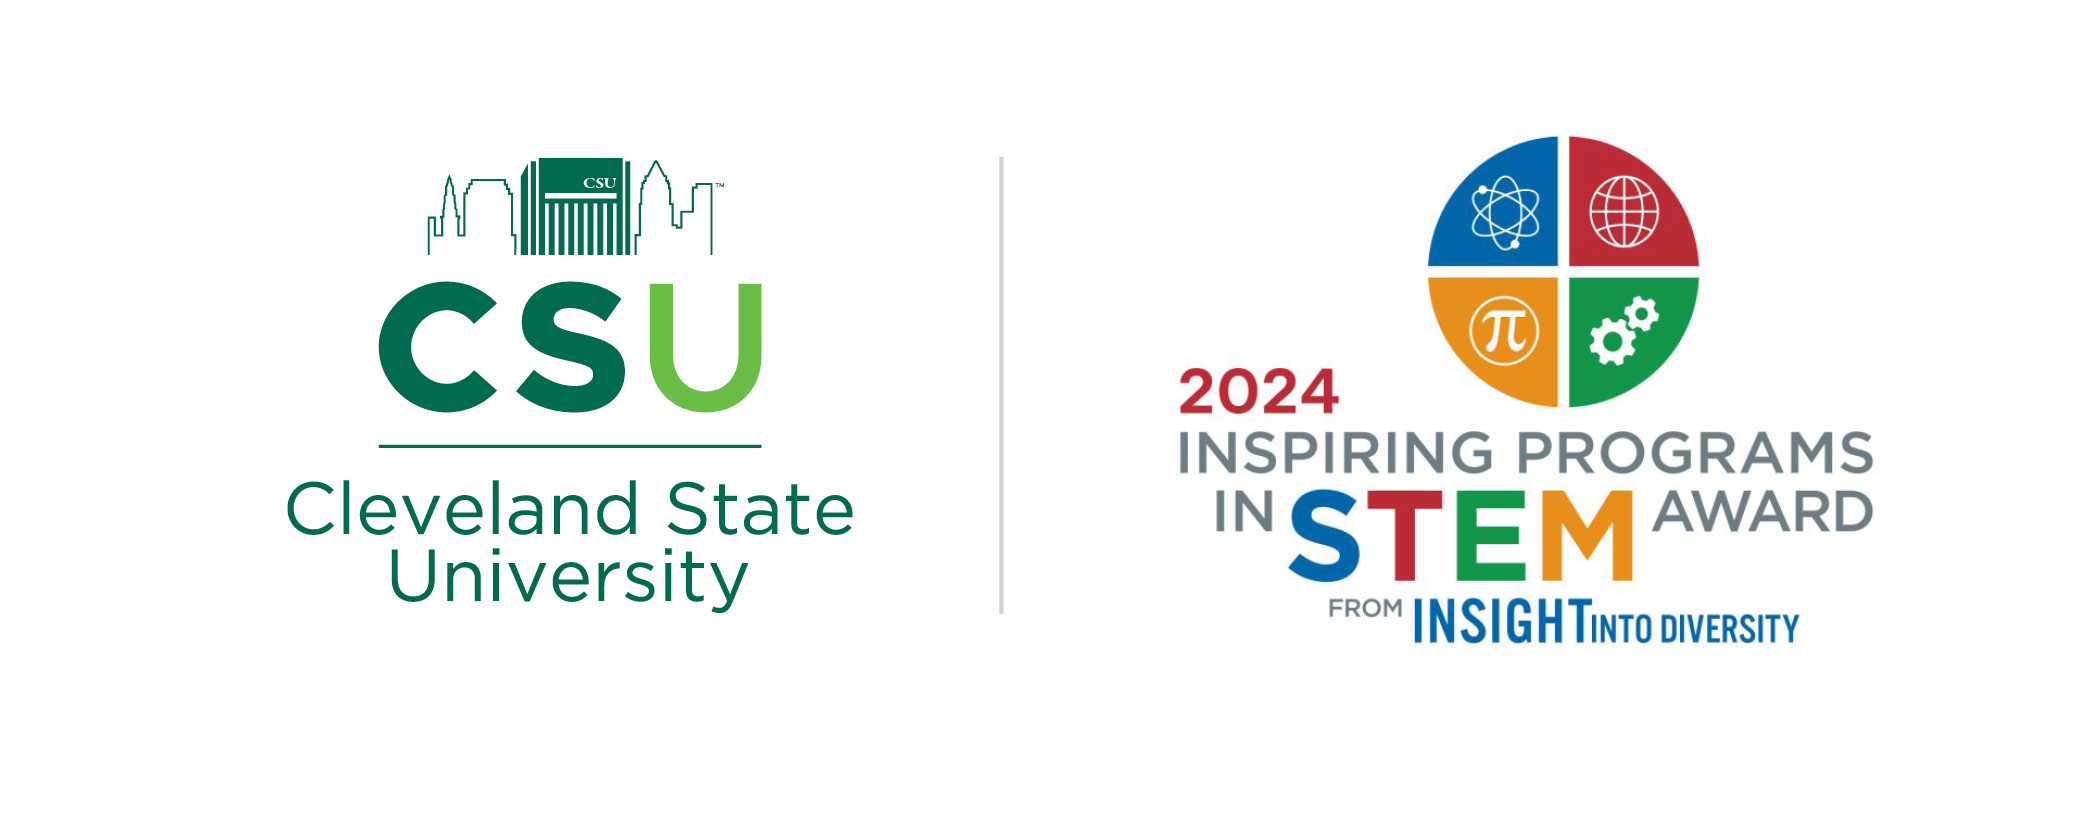 2024 Inspiring Programs in STEM Award